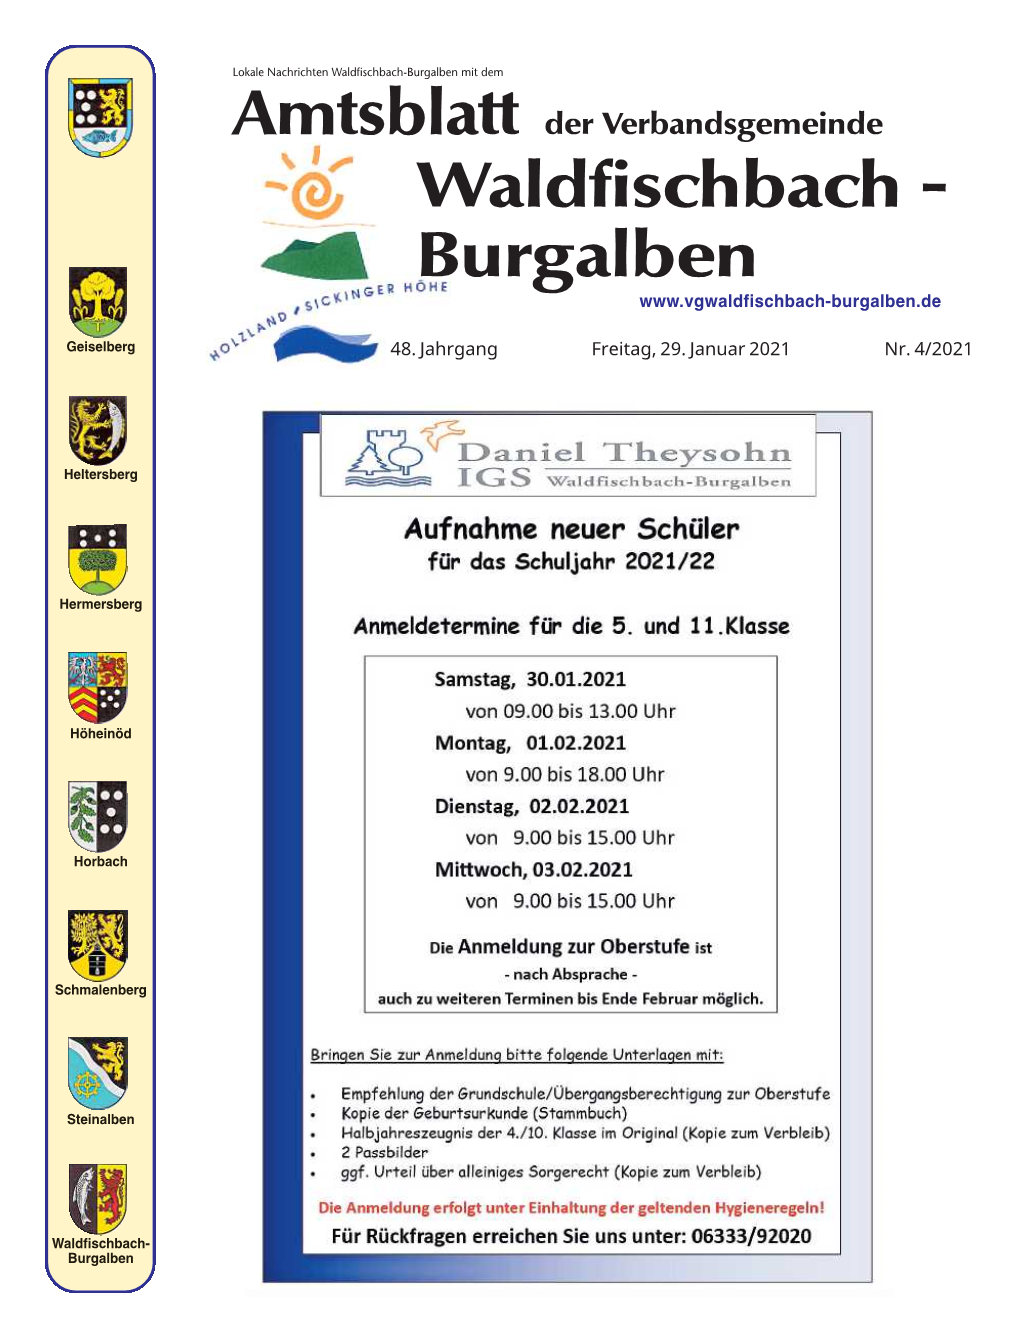 Verbandsgemeinde Waldfischbach-Burgalben -Fundamt- Diegebührensindbeiderbeantragungbarodermiteckartezuentrichten